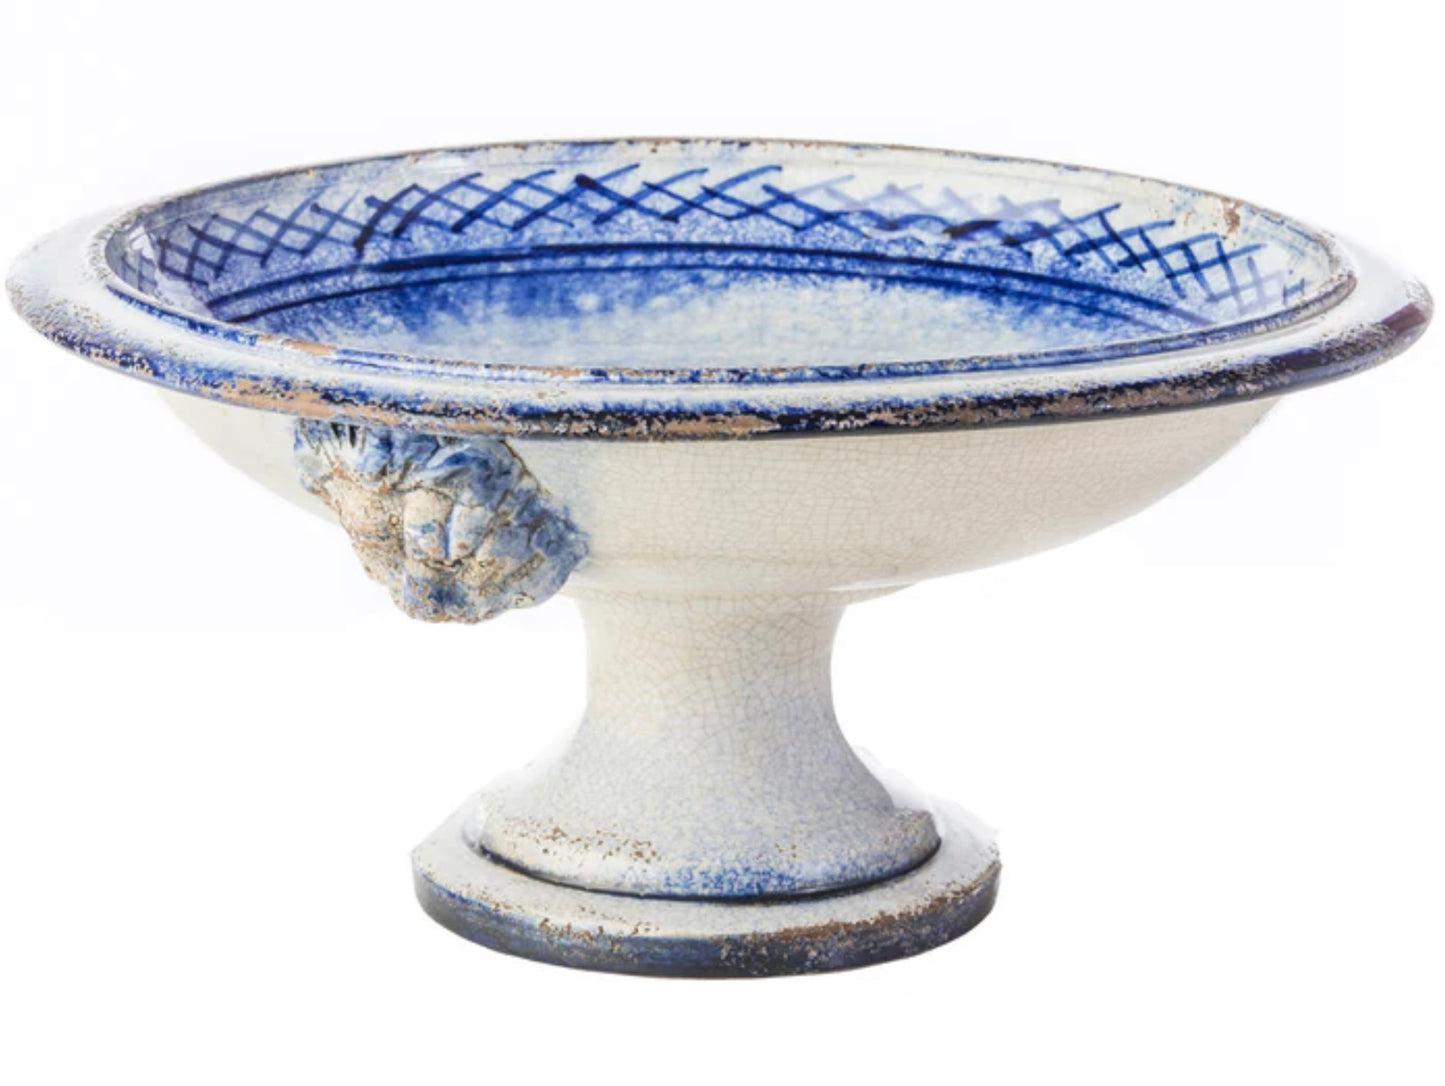 Lionshead Blue & White Ceramic Compote